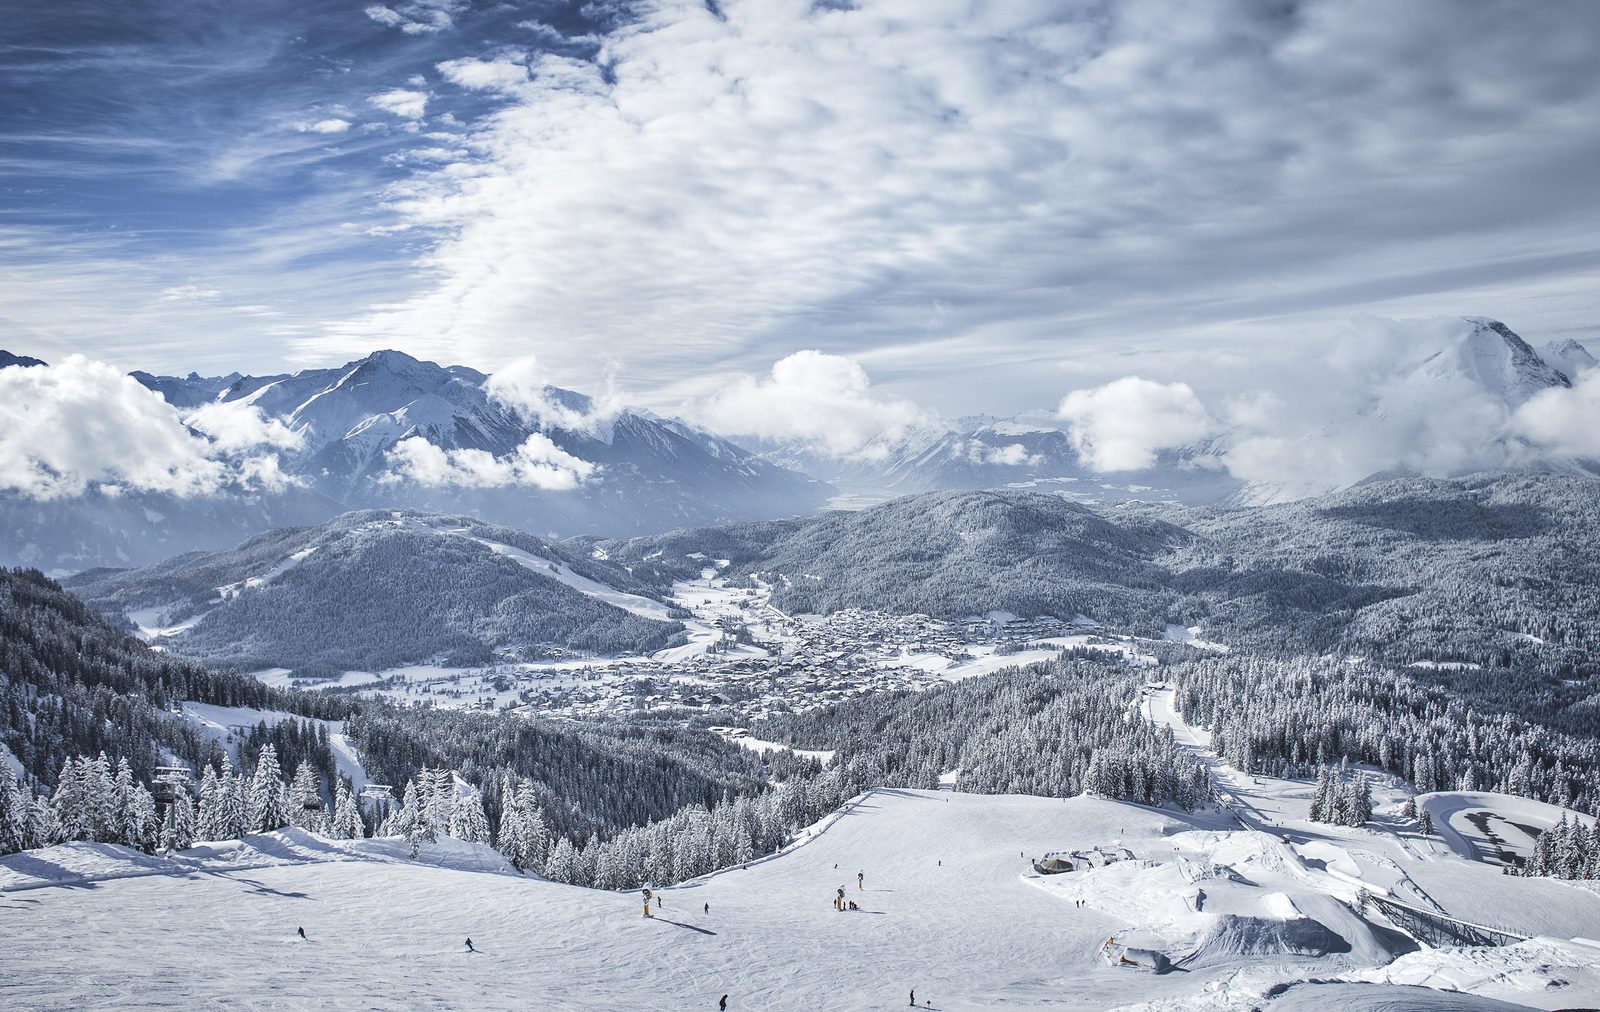 Ga er last minute op uit en wie weet sta je volgende week al in de Tiroler Alpen!